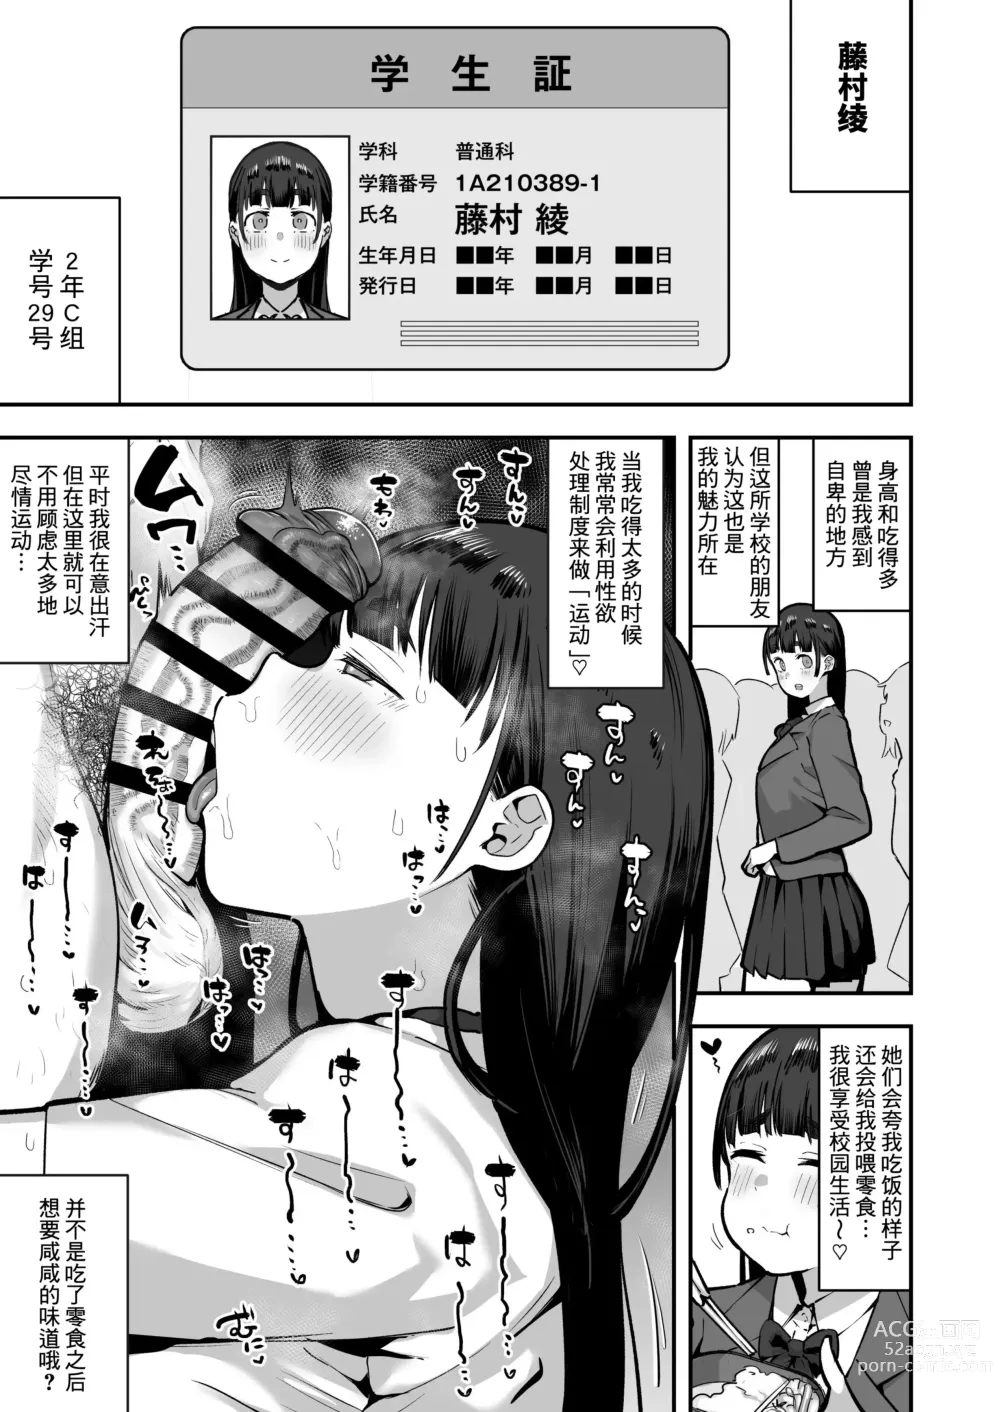 Page 36 of doujinshi 作为女子学校的性欲处理担当中途入学的男学生的记录